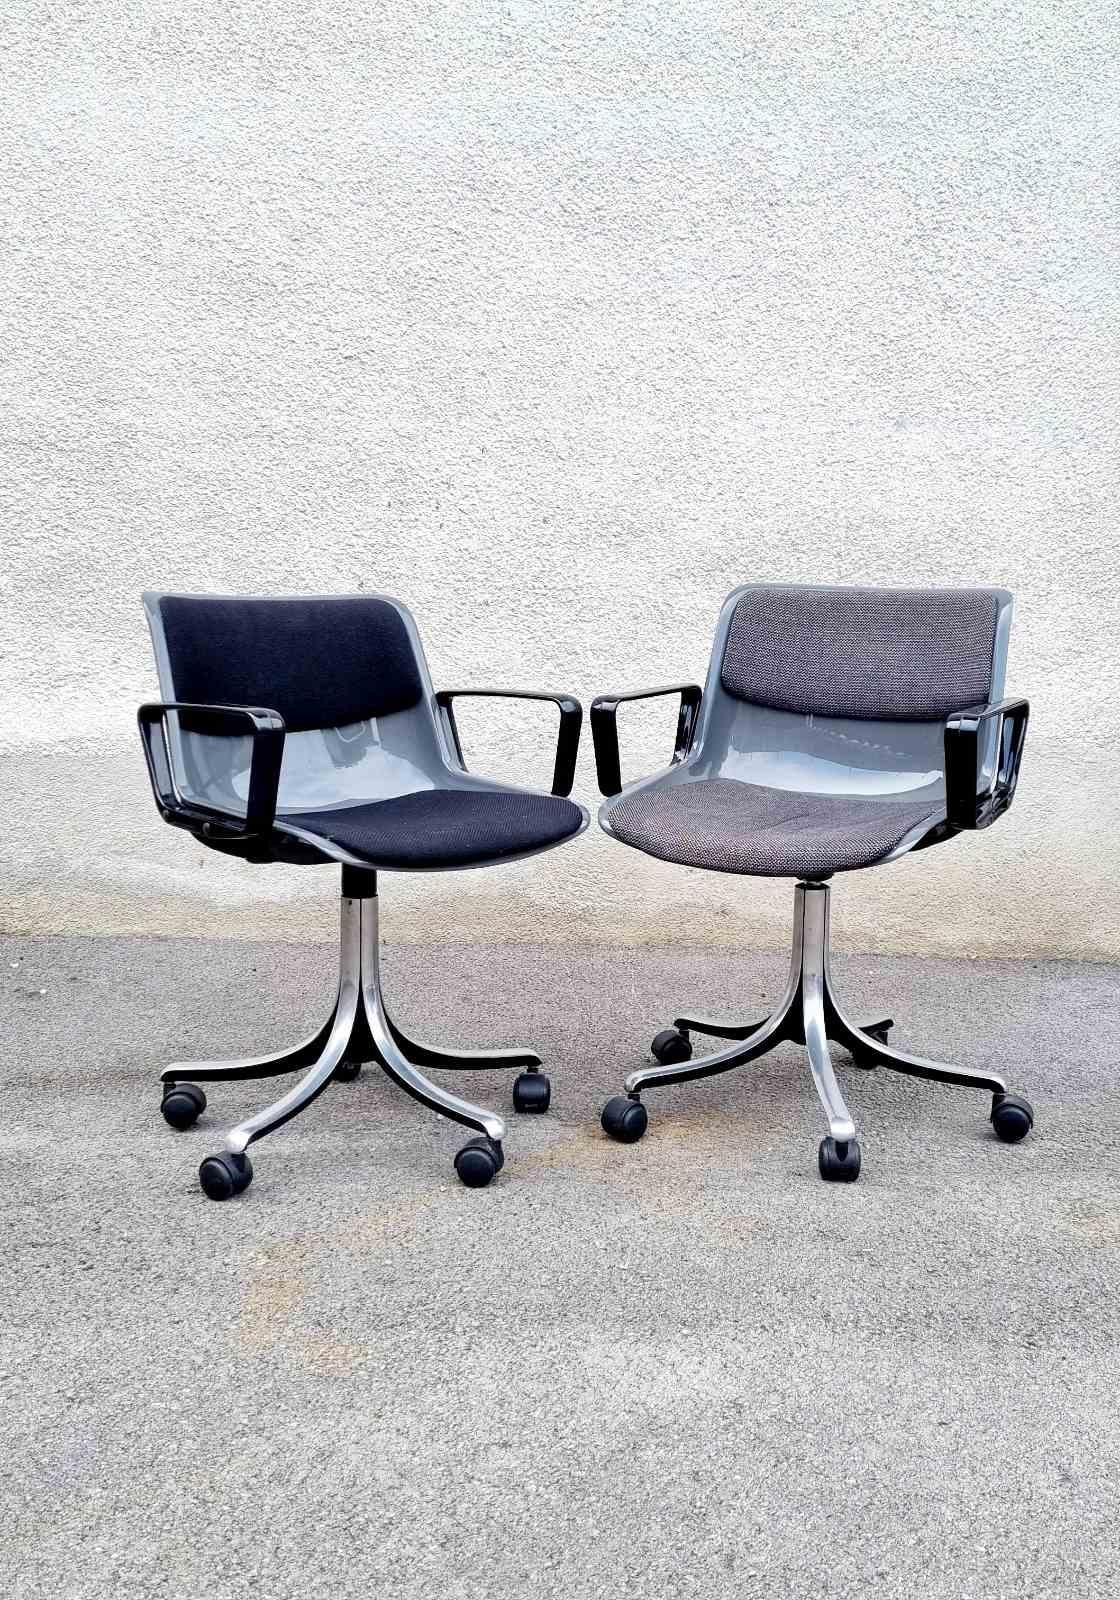 Italian Modern Modus Chair by Osvaldo Borsani for Tecno, Italy 60s For Sale 6